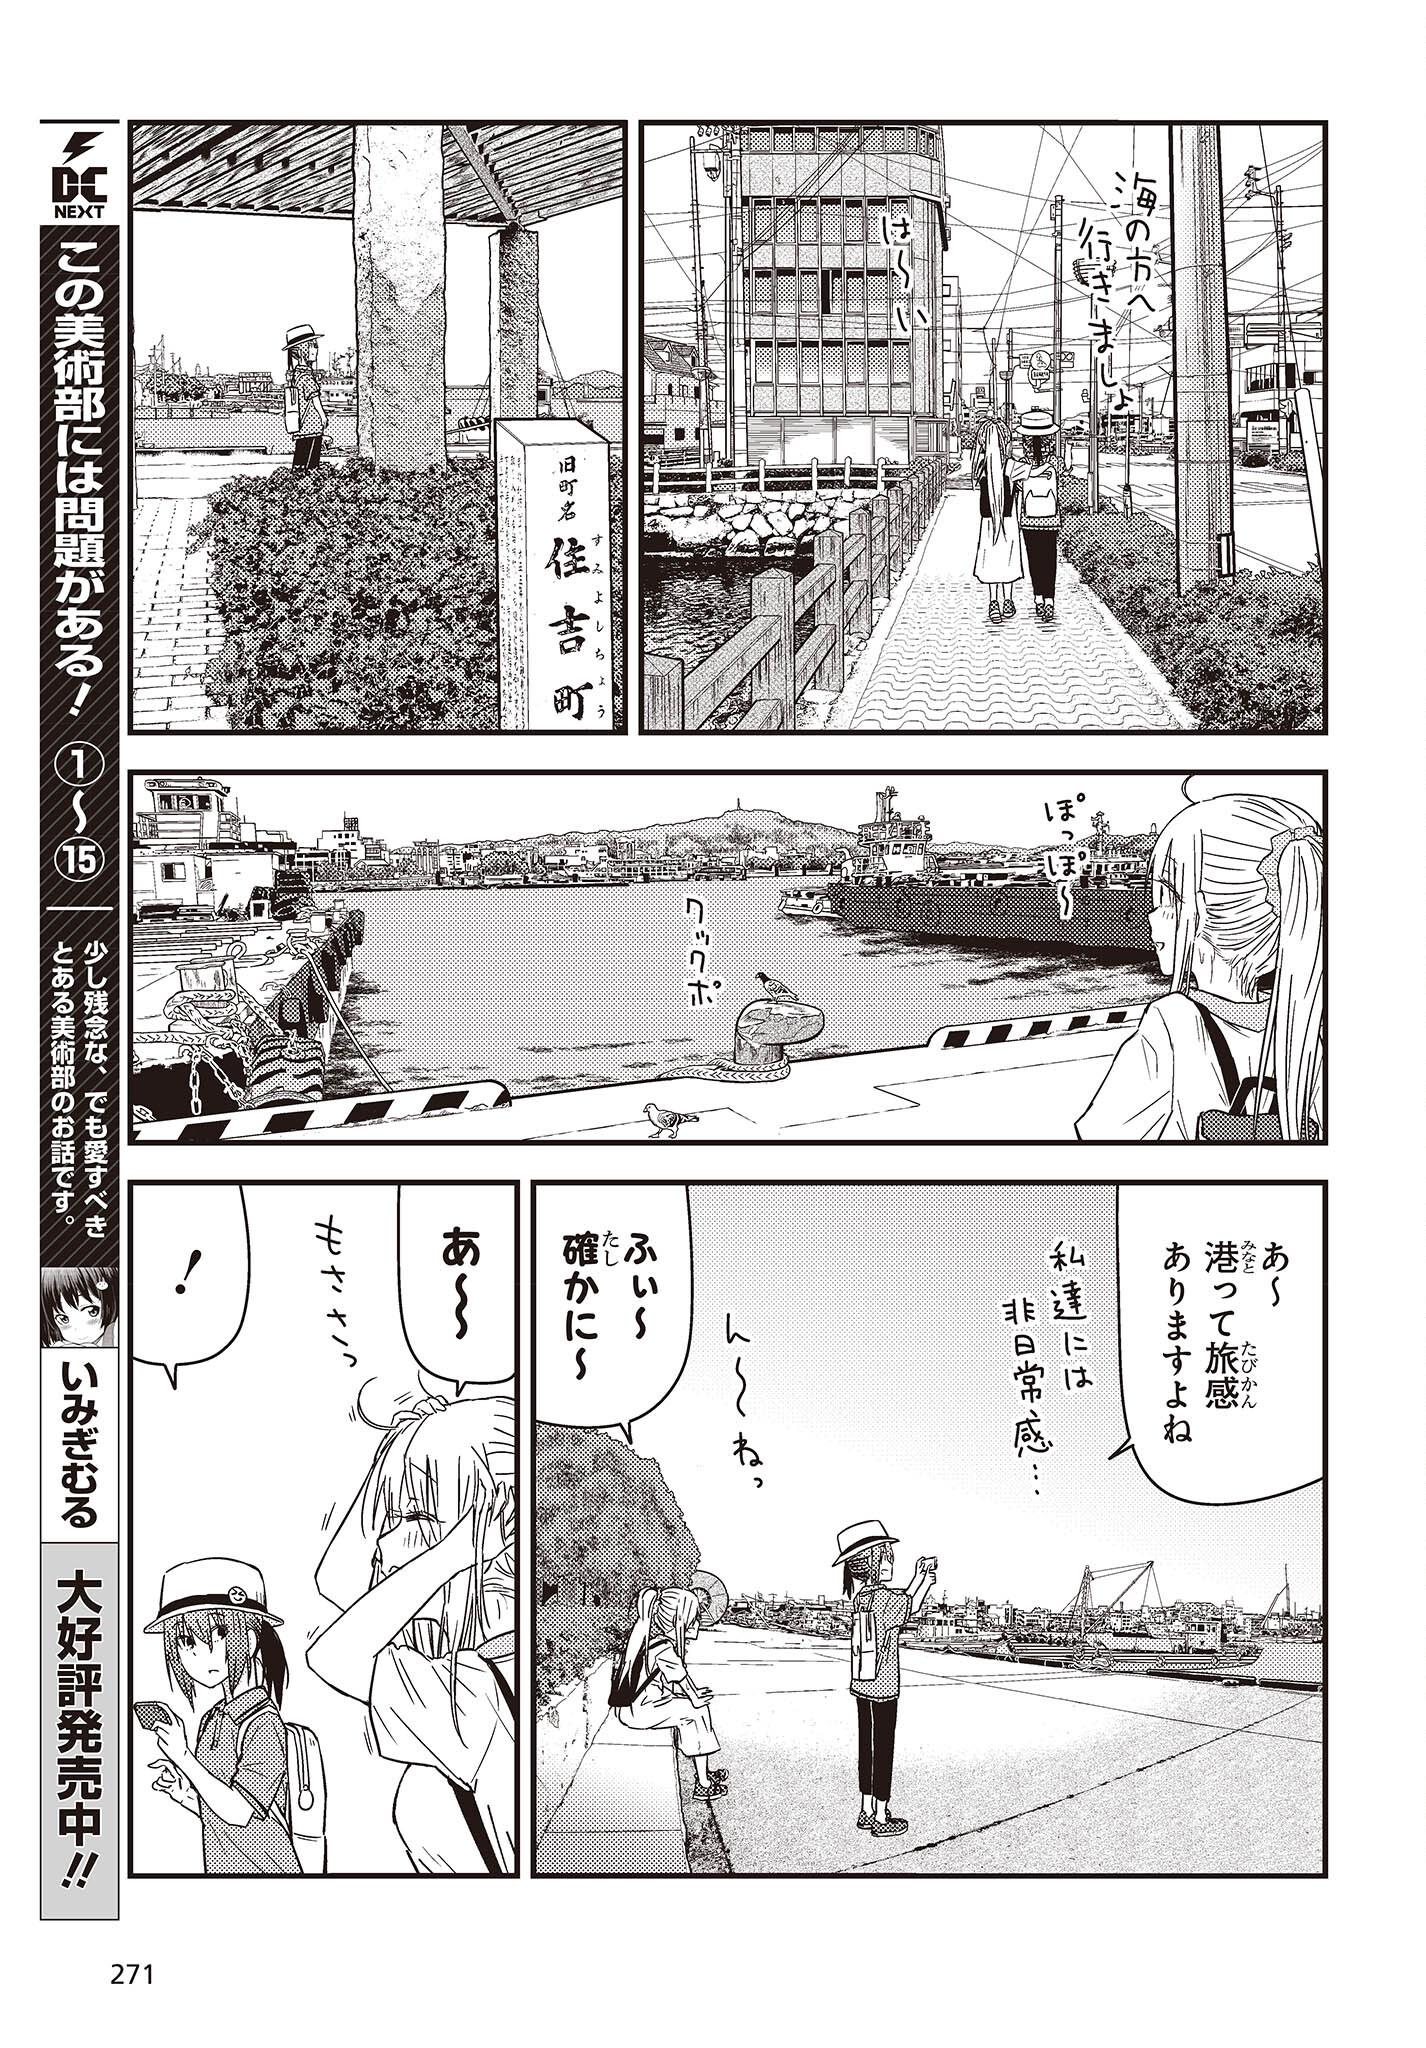 ざつ旅-That's Journey- 第27話 - Page 11